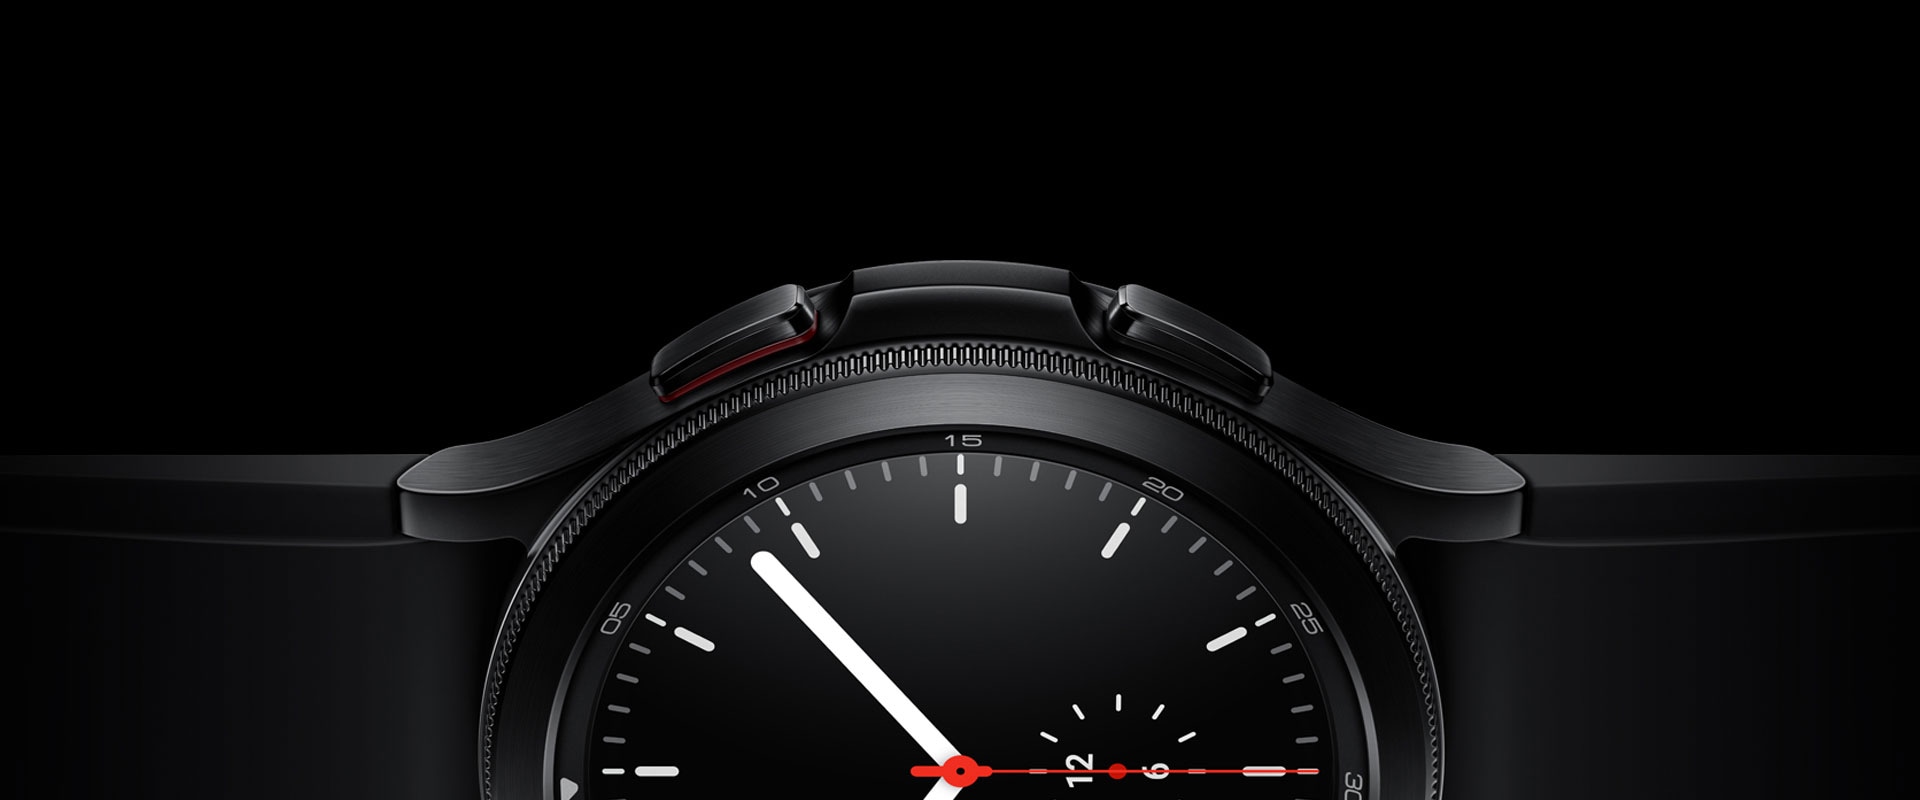 חצי צד של תצוגת השעון של Galaxy Watch4 Classic שחור מוצג בצורה בולטת, תוך התמקדות במסגרת, בחומרים ובמסך תצוגת השעון הפשוט שמראה את השעה.